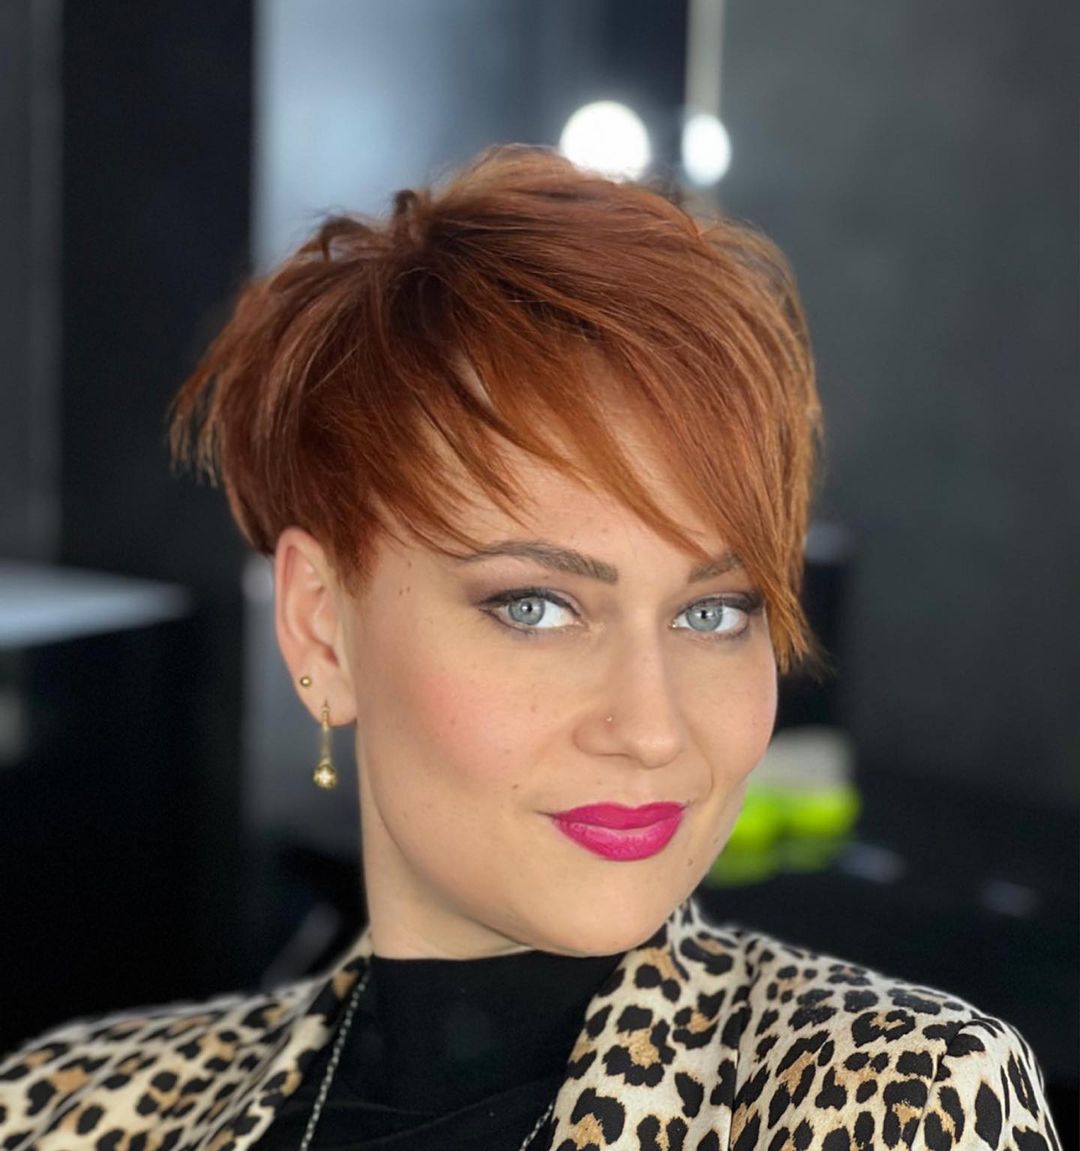 Asymmetric Pixie Cut on Red Hair